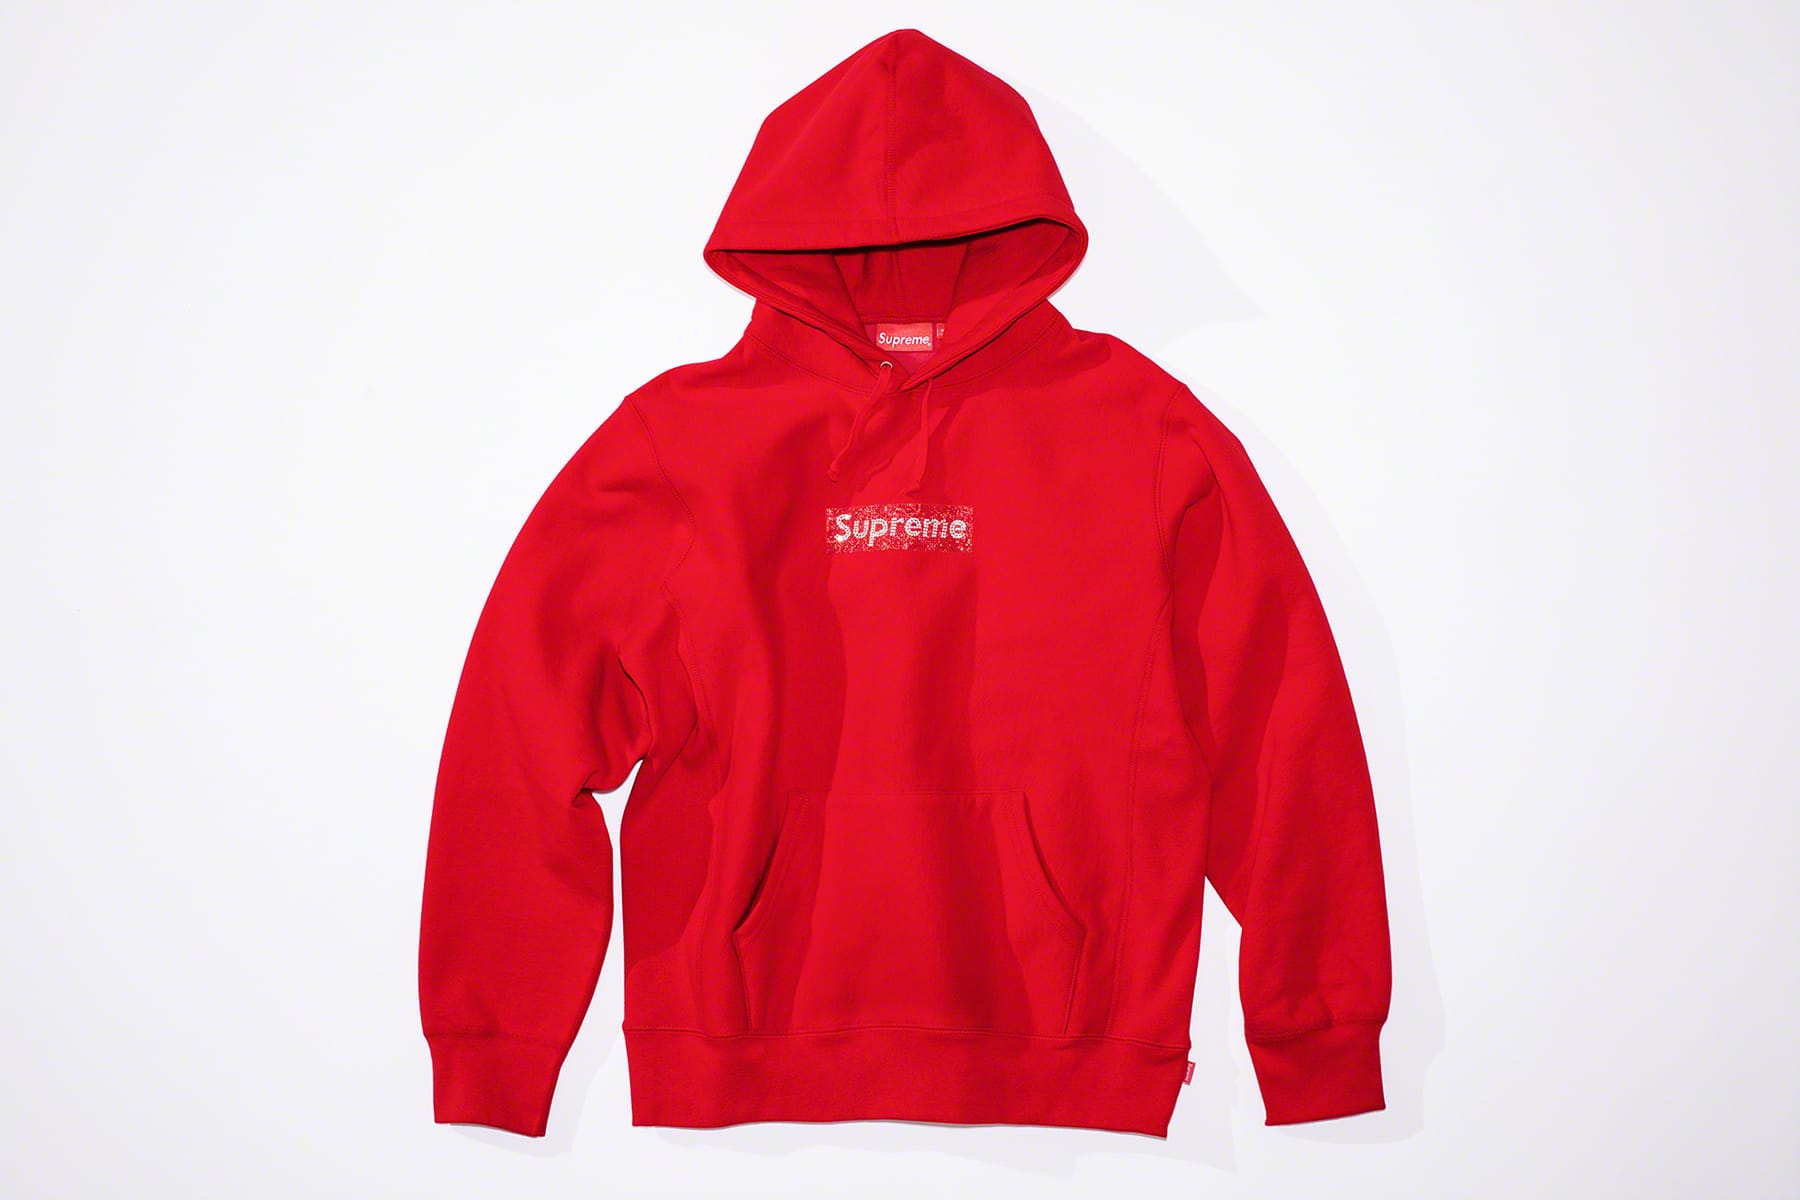 supreme swarovski hoodie price